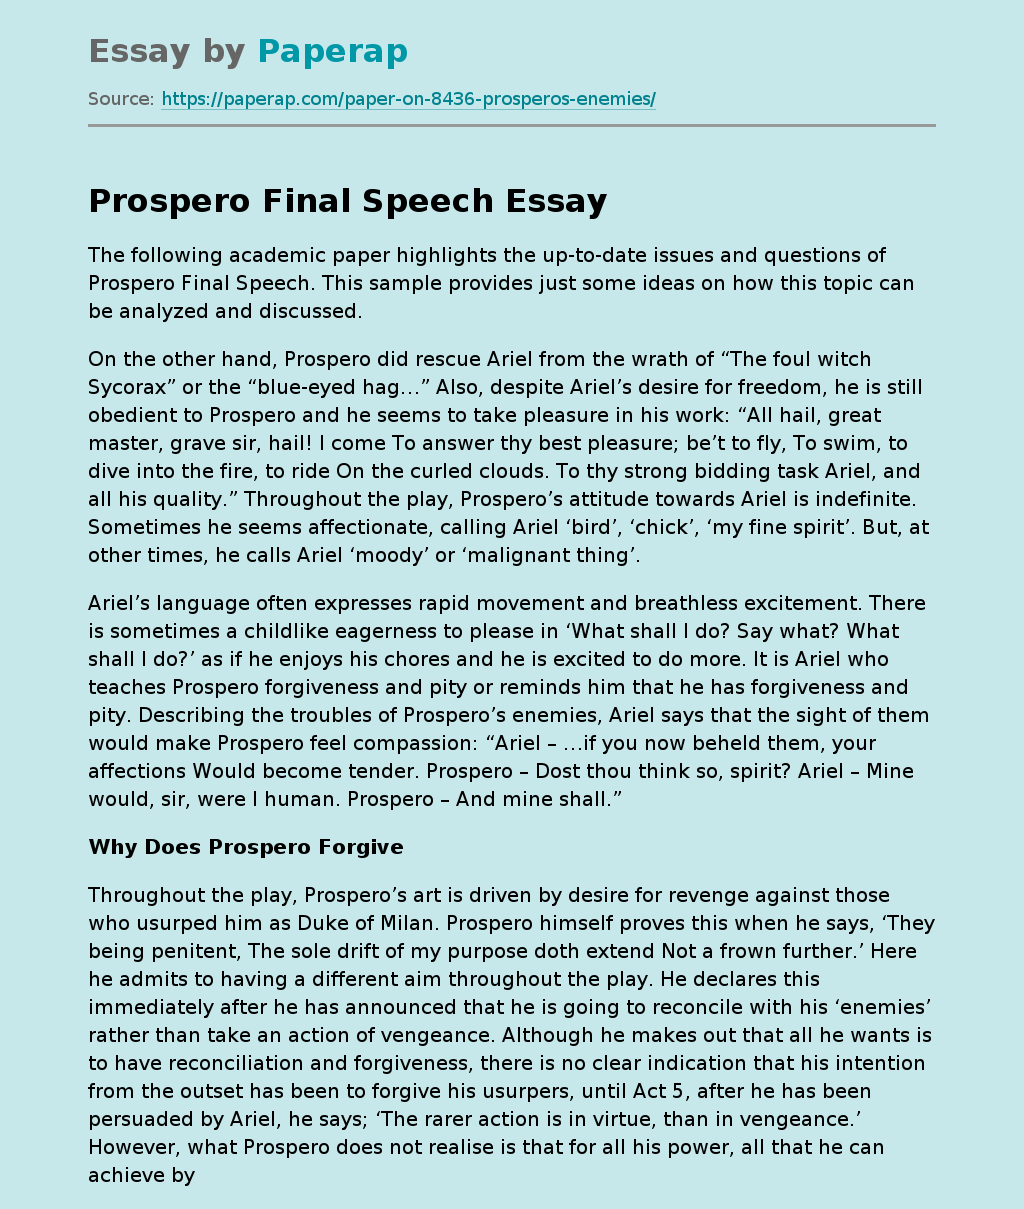 Prospero Final Speech